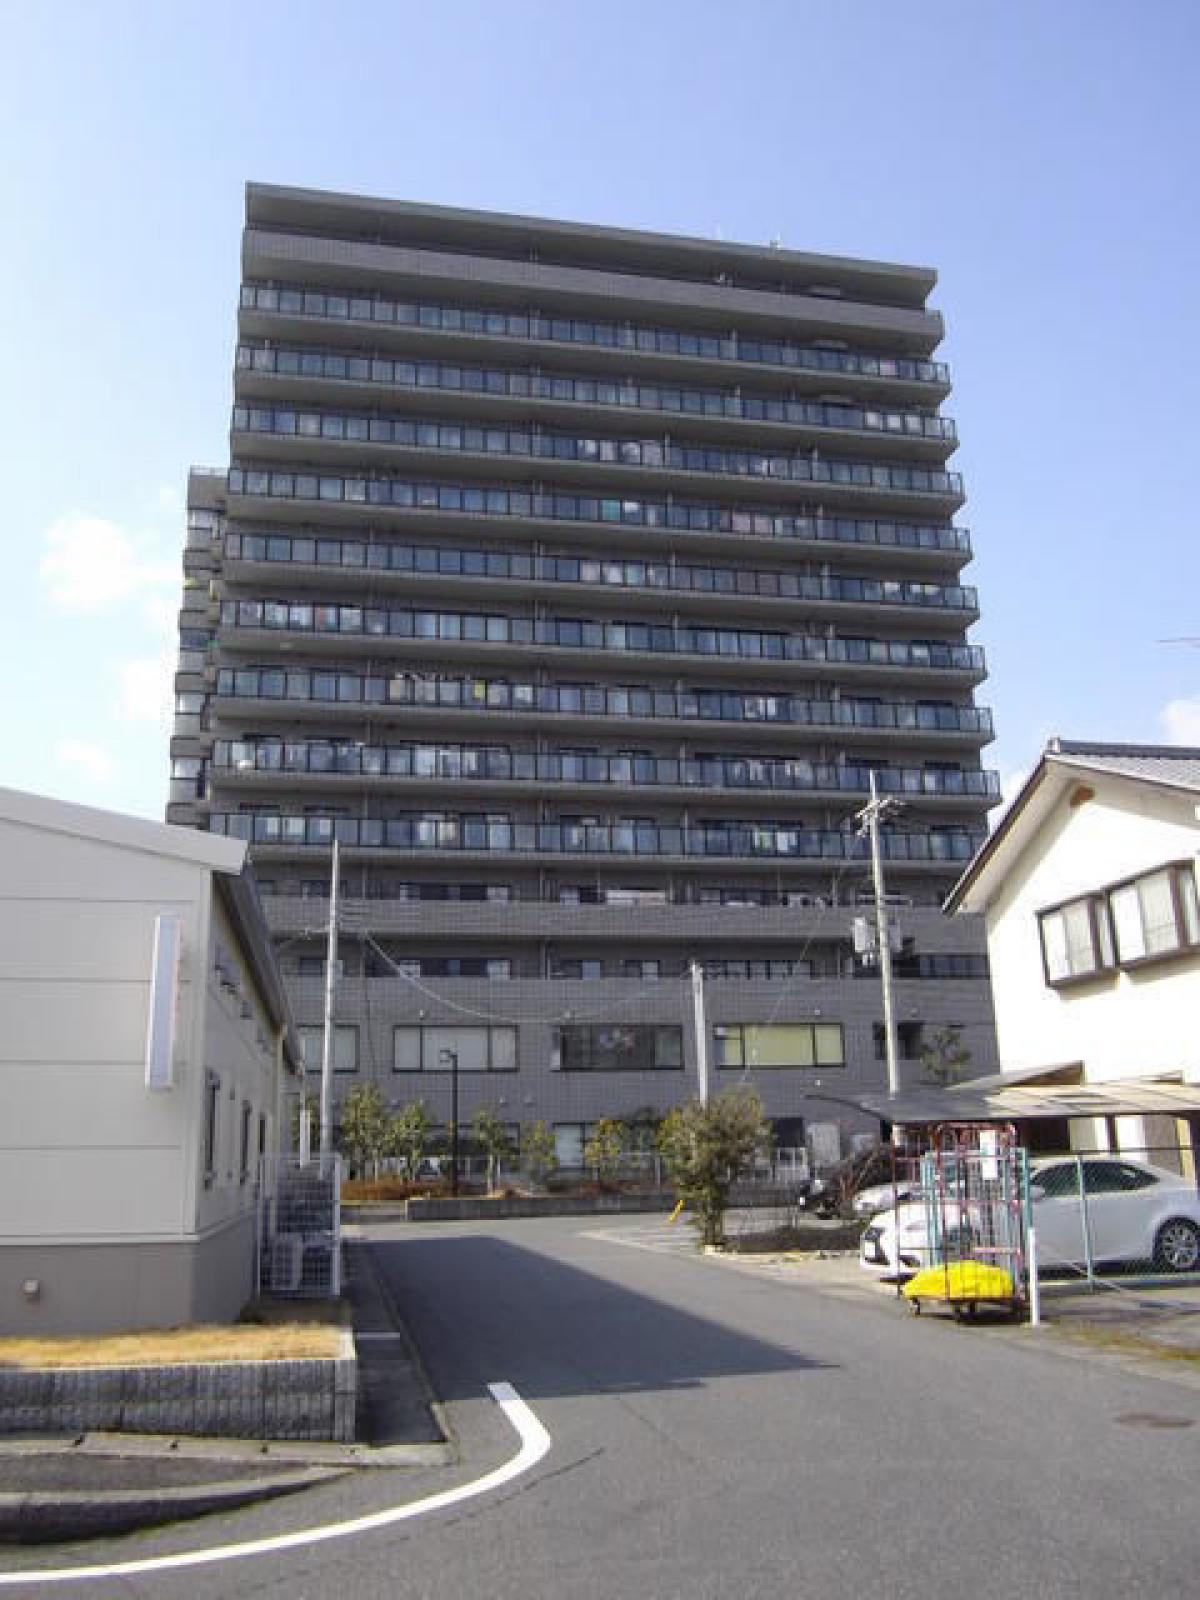 Picture of Apartment For Sale in Otsu Shi, Shiga, Japan